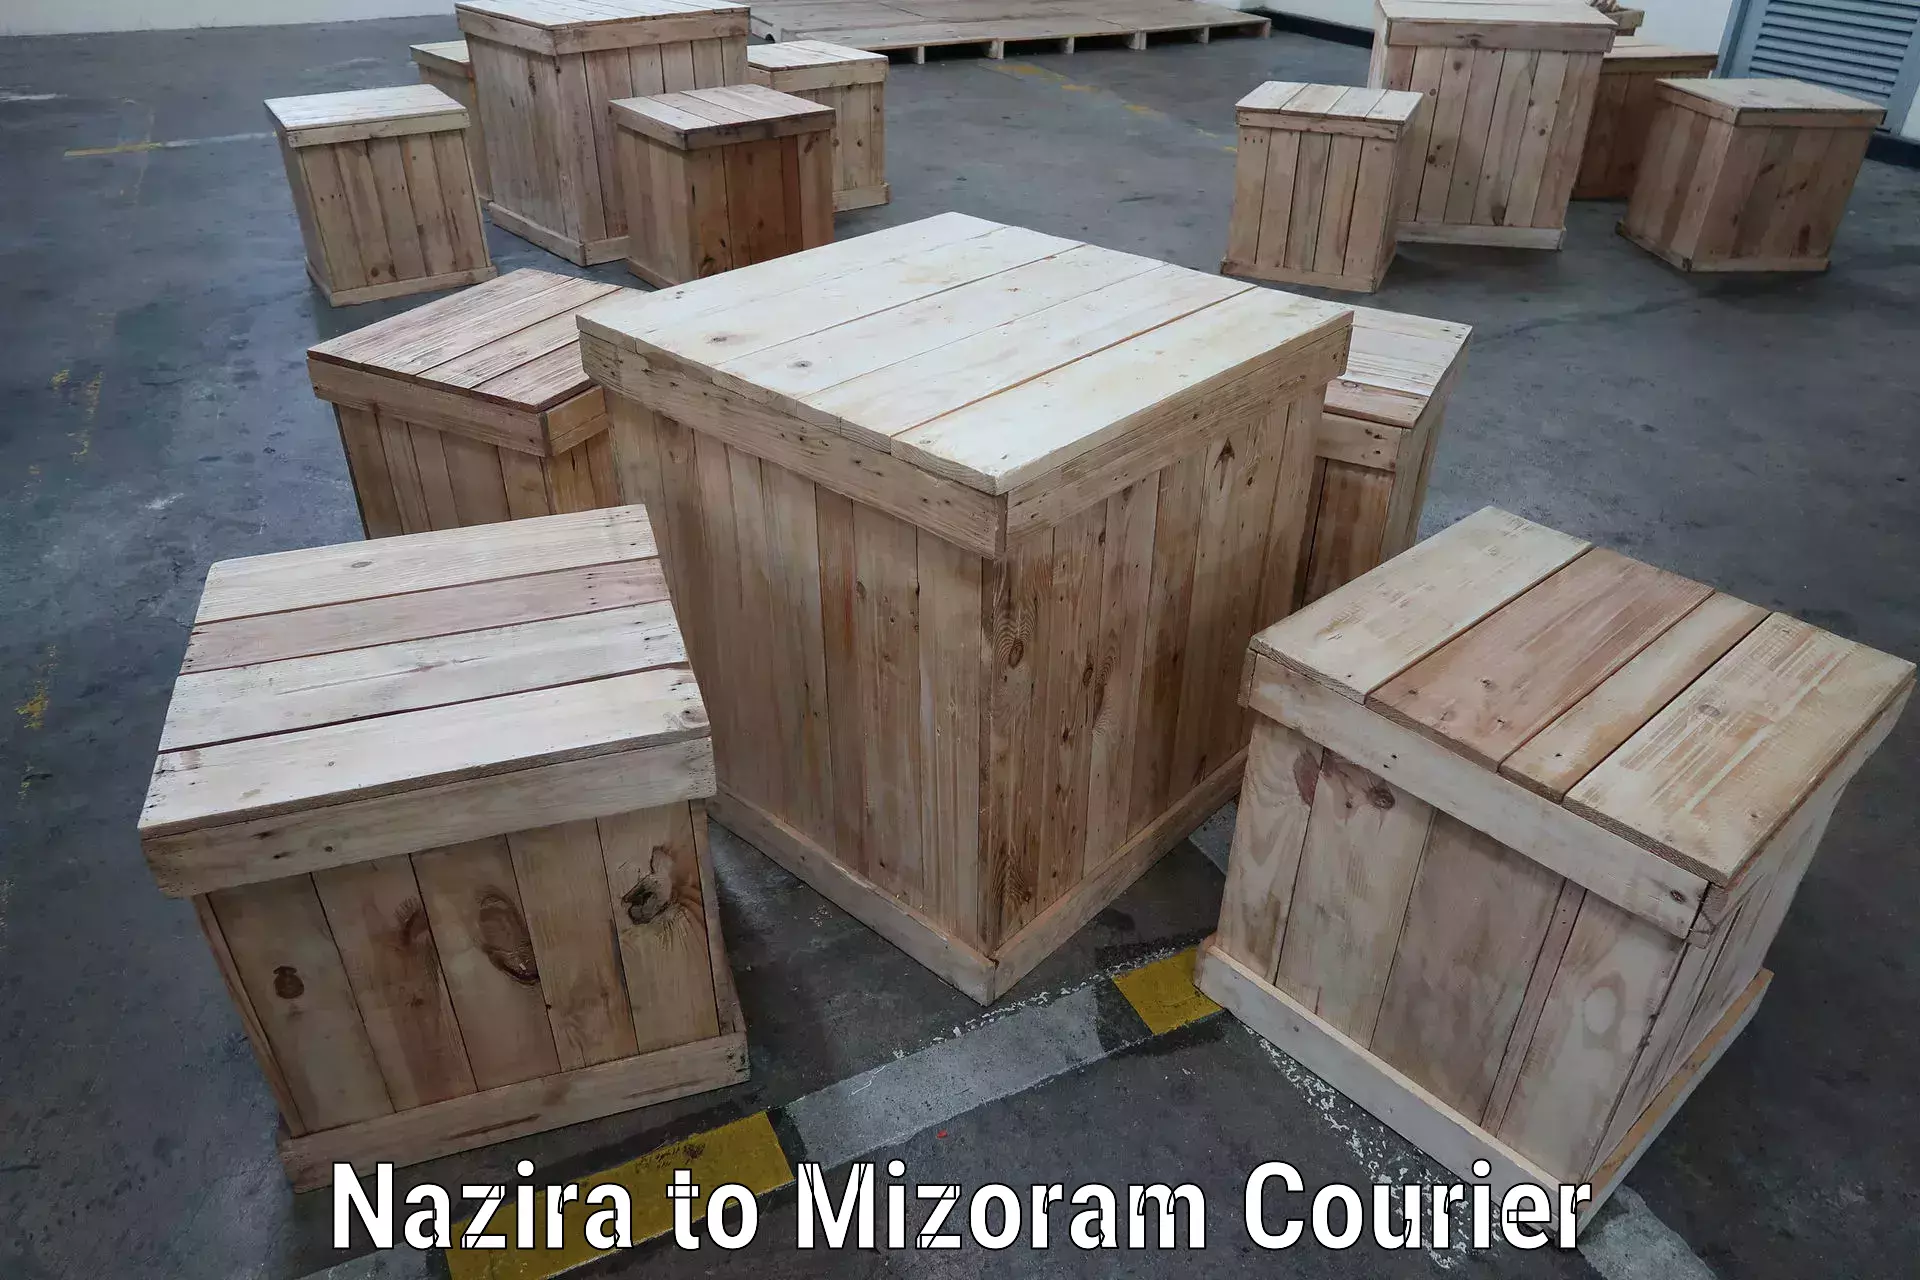 Automated shipping processes Nazira to Mizoram